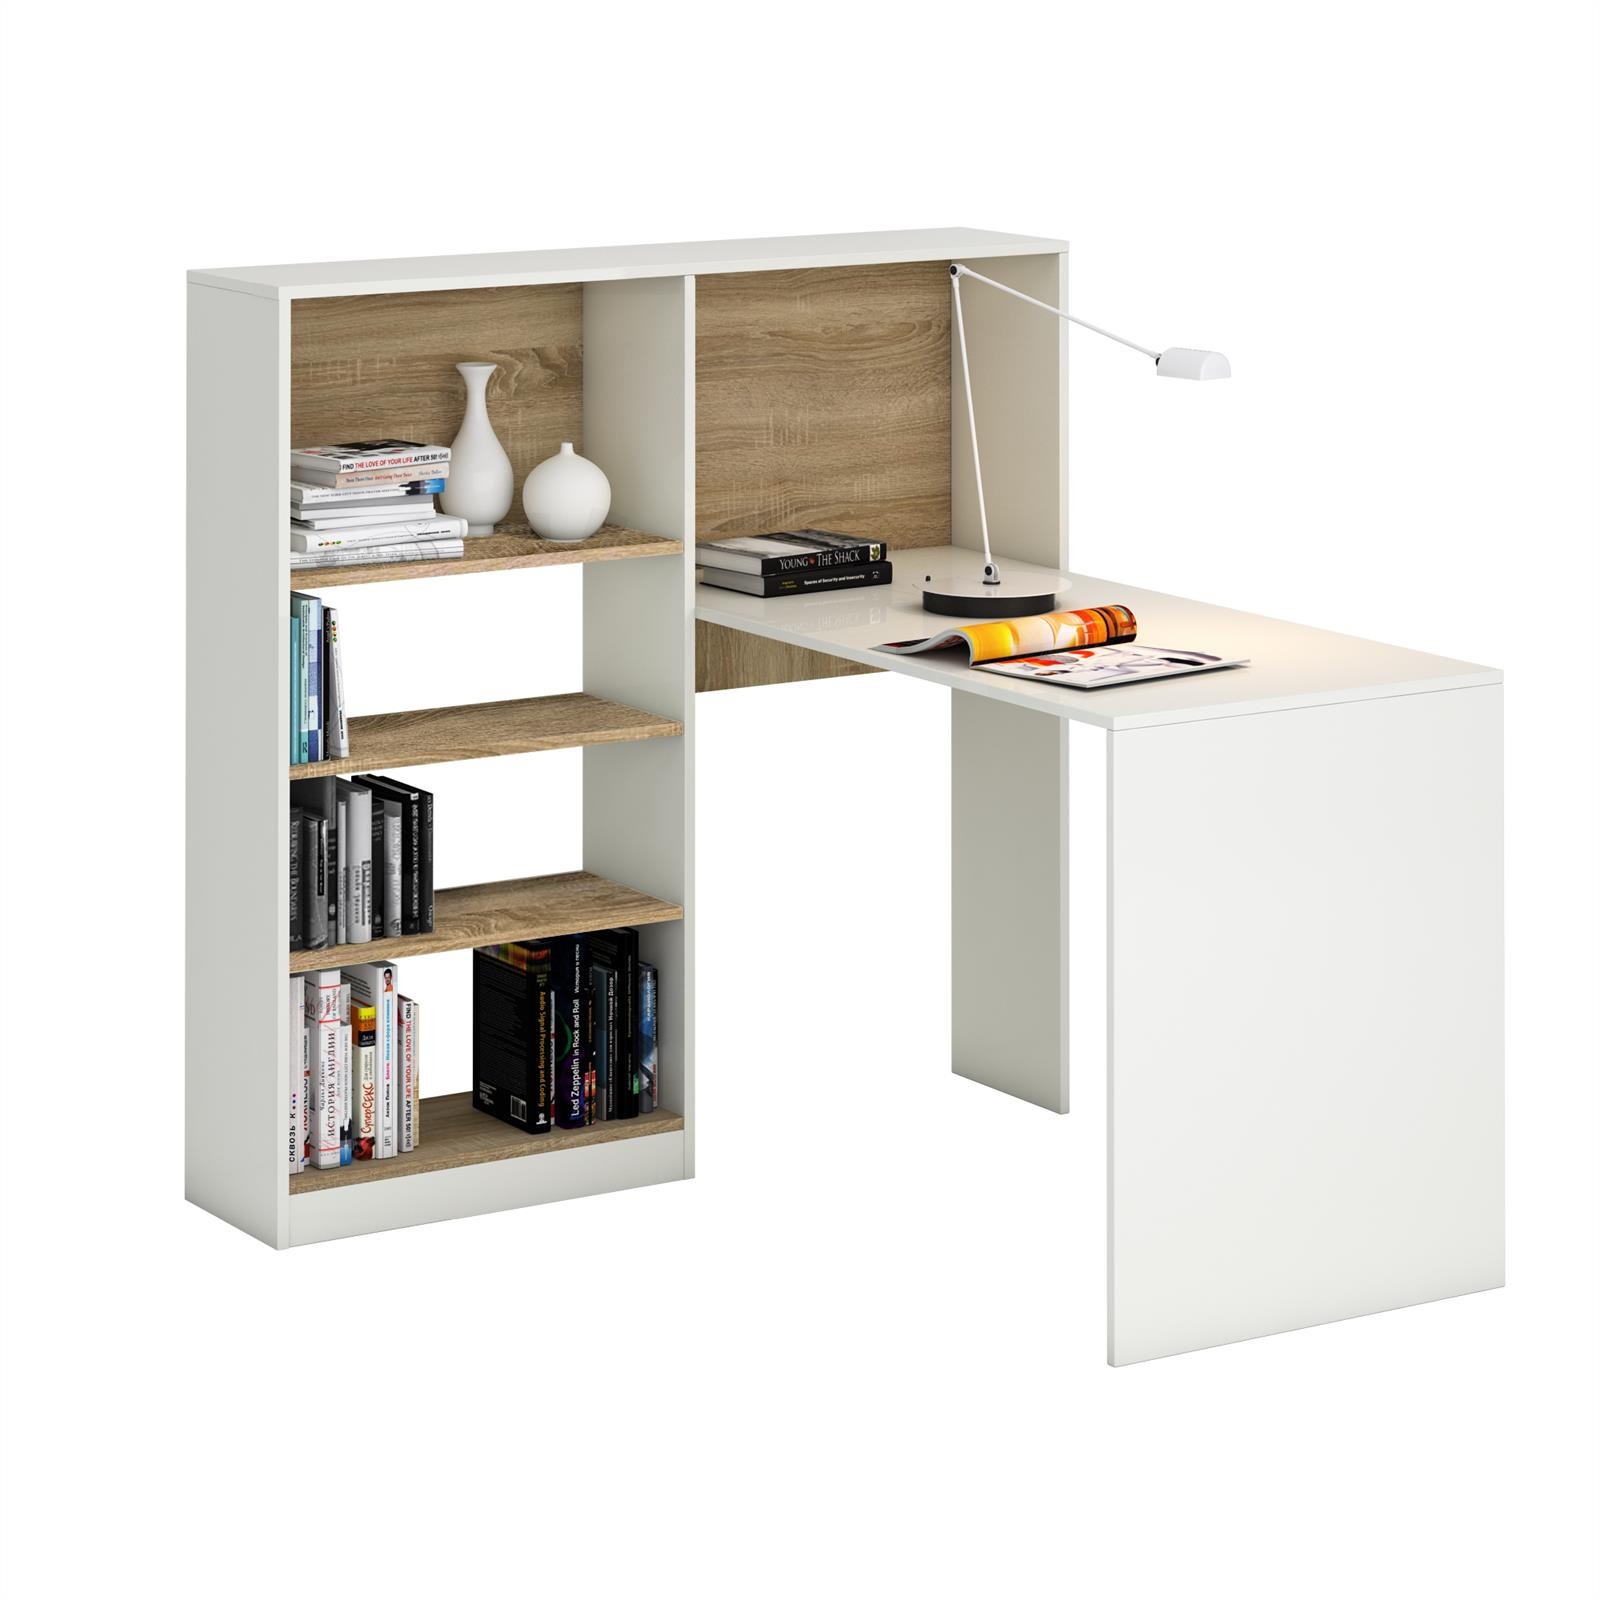 Schreibtisch Mit Regal
 Ikea Regal Mit Schreibtisch – Nazarm